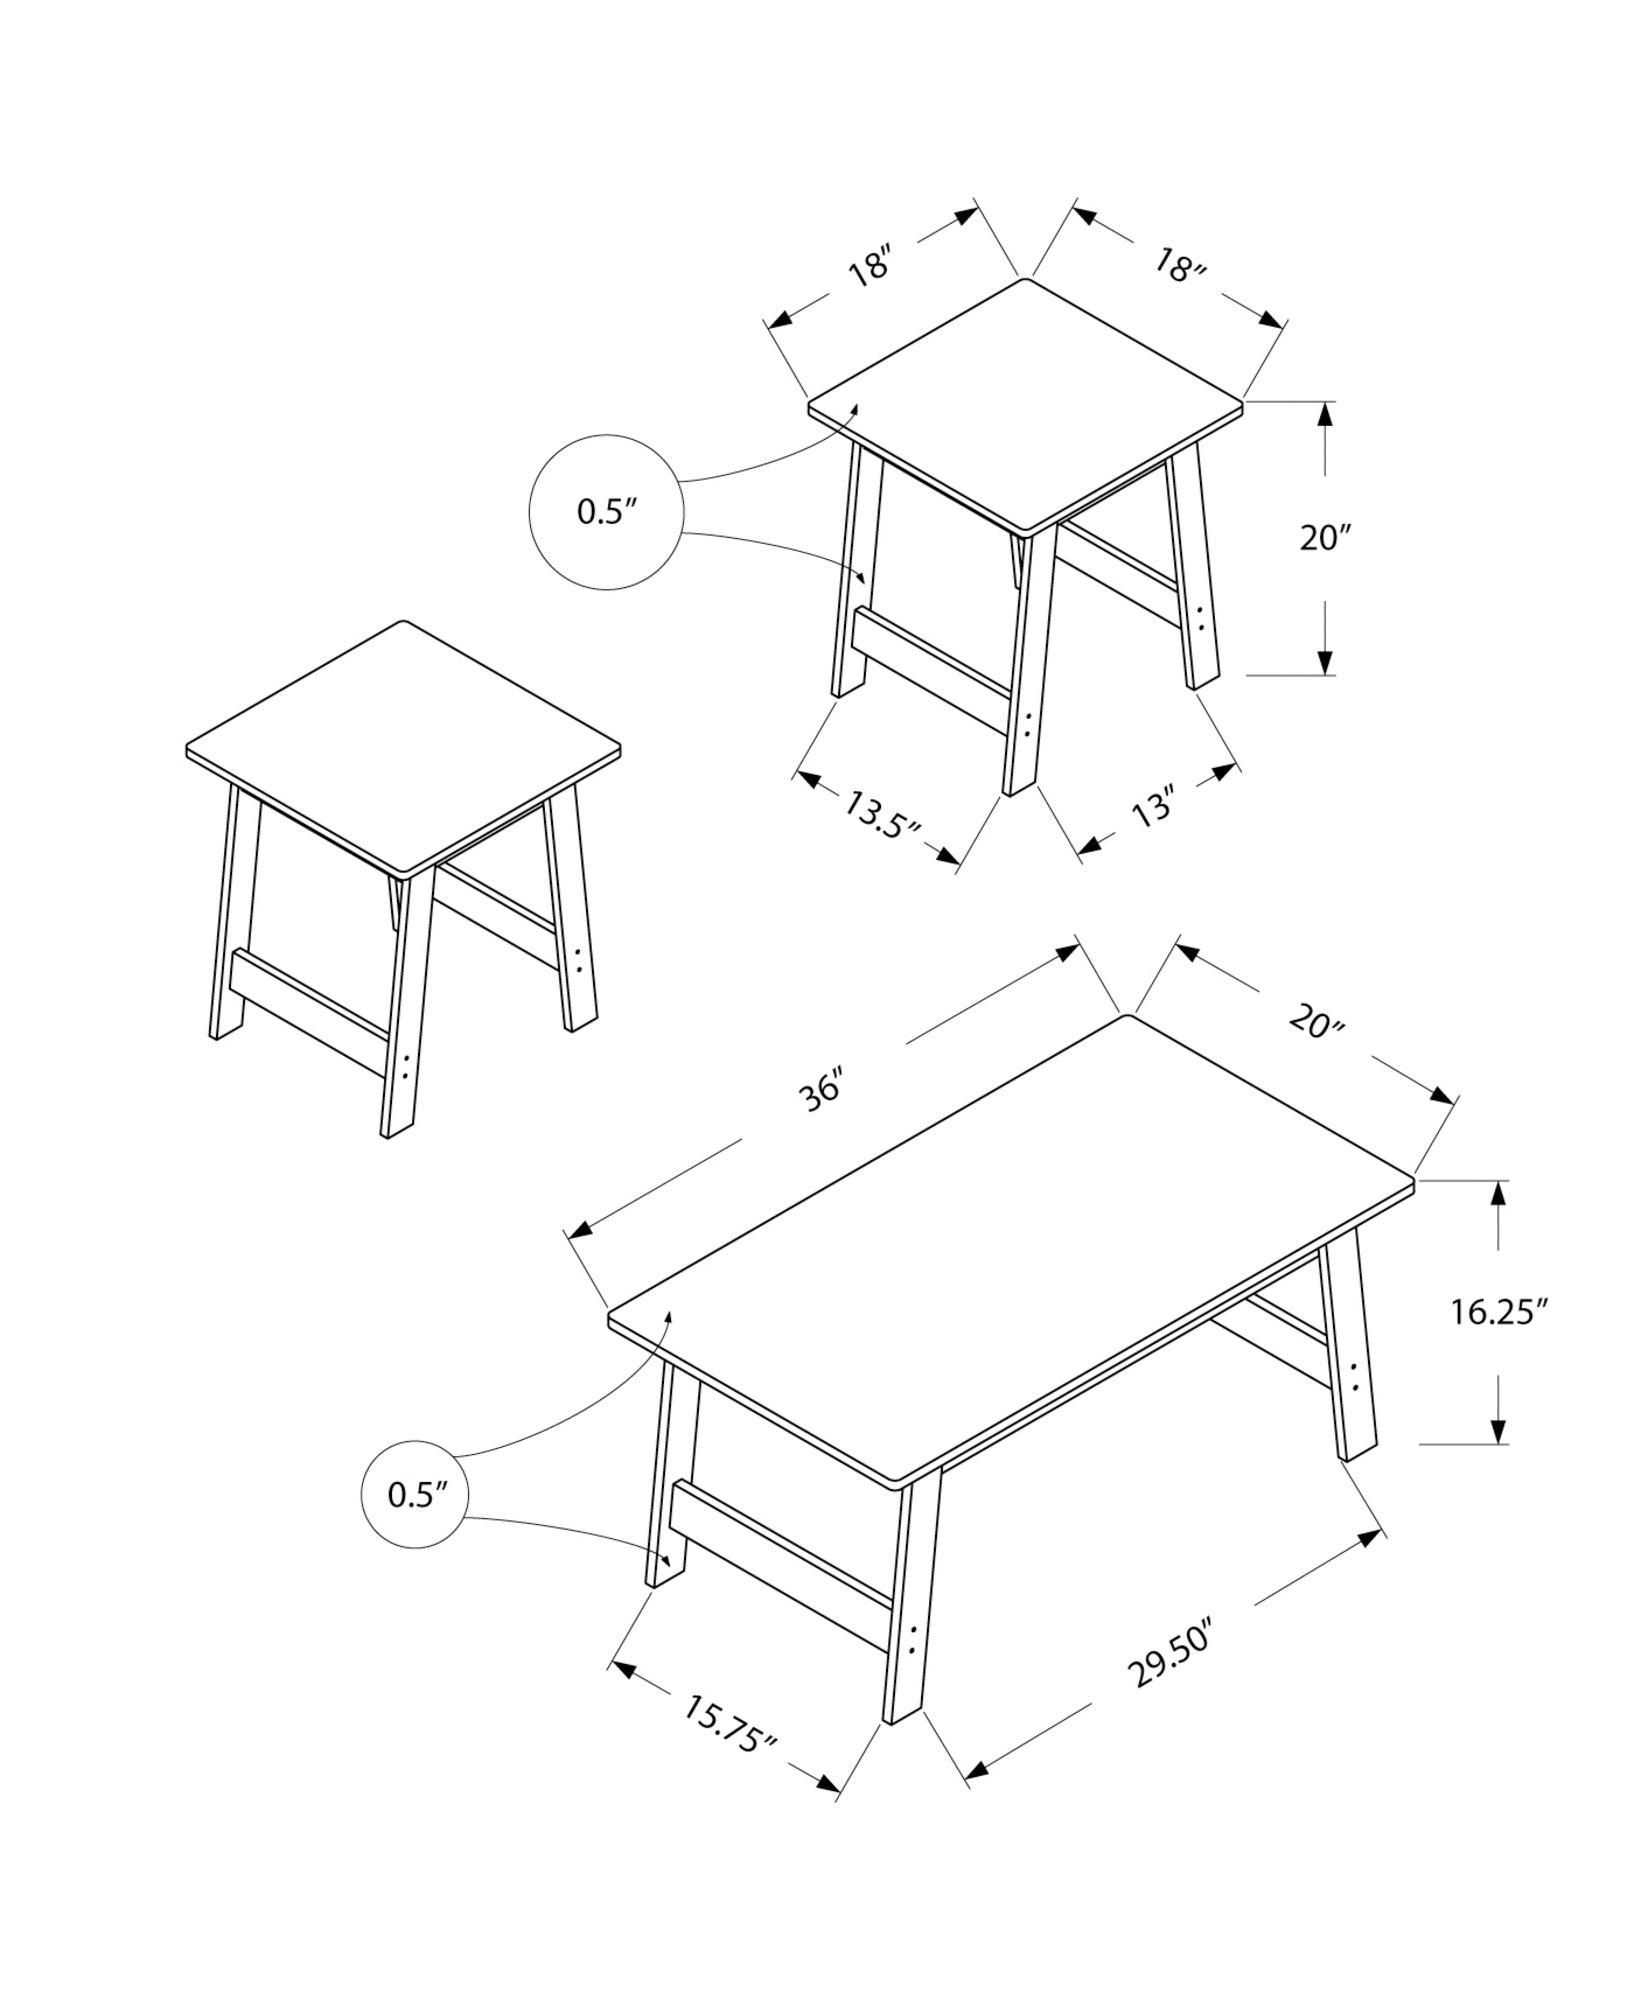 Table Set - 3Pcs Set / Grey